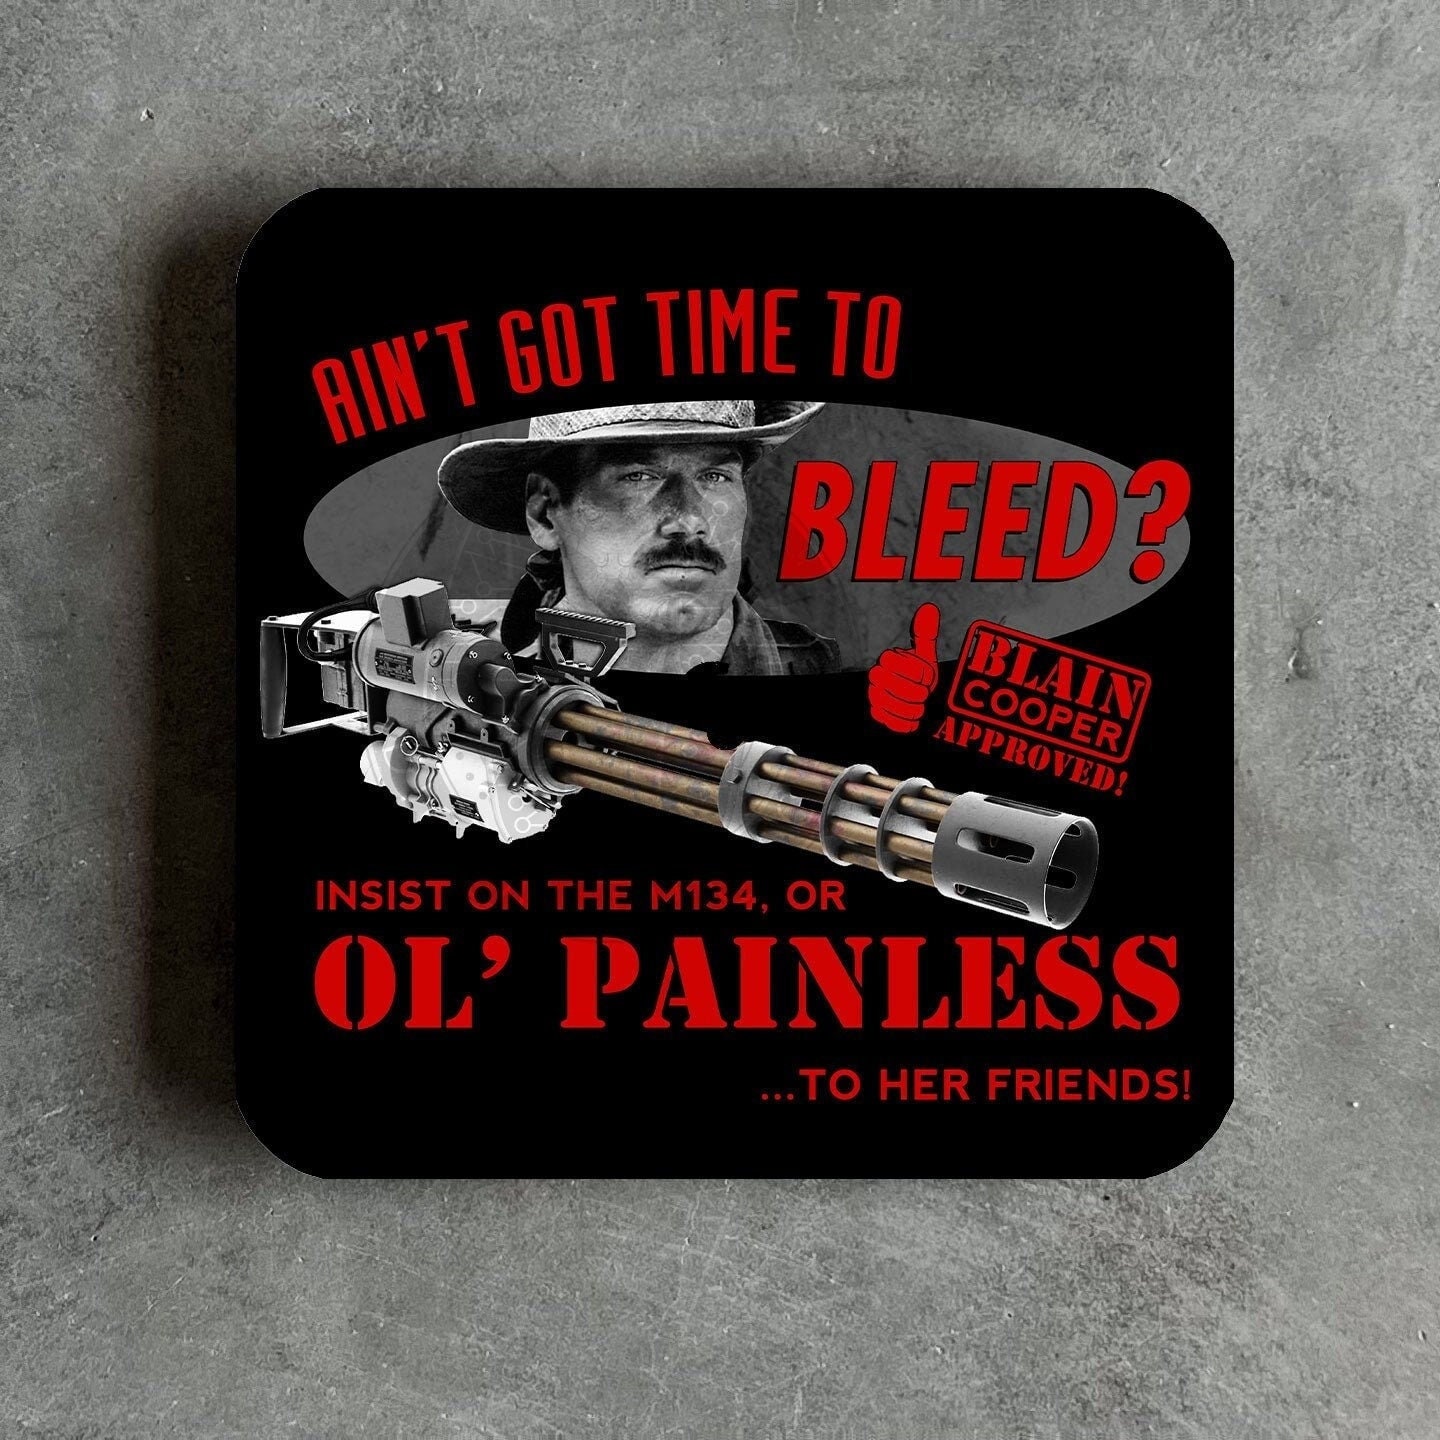 Blain Cooper (Predator) said: I ain't got time to bleed. | Pin